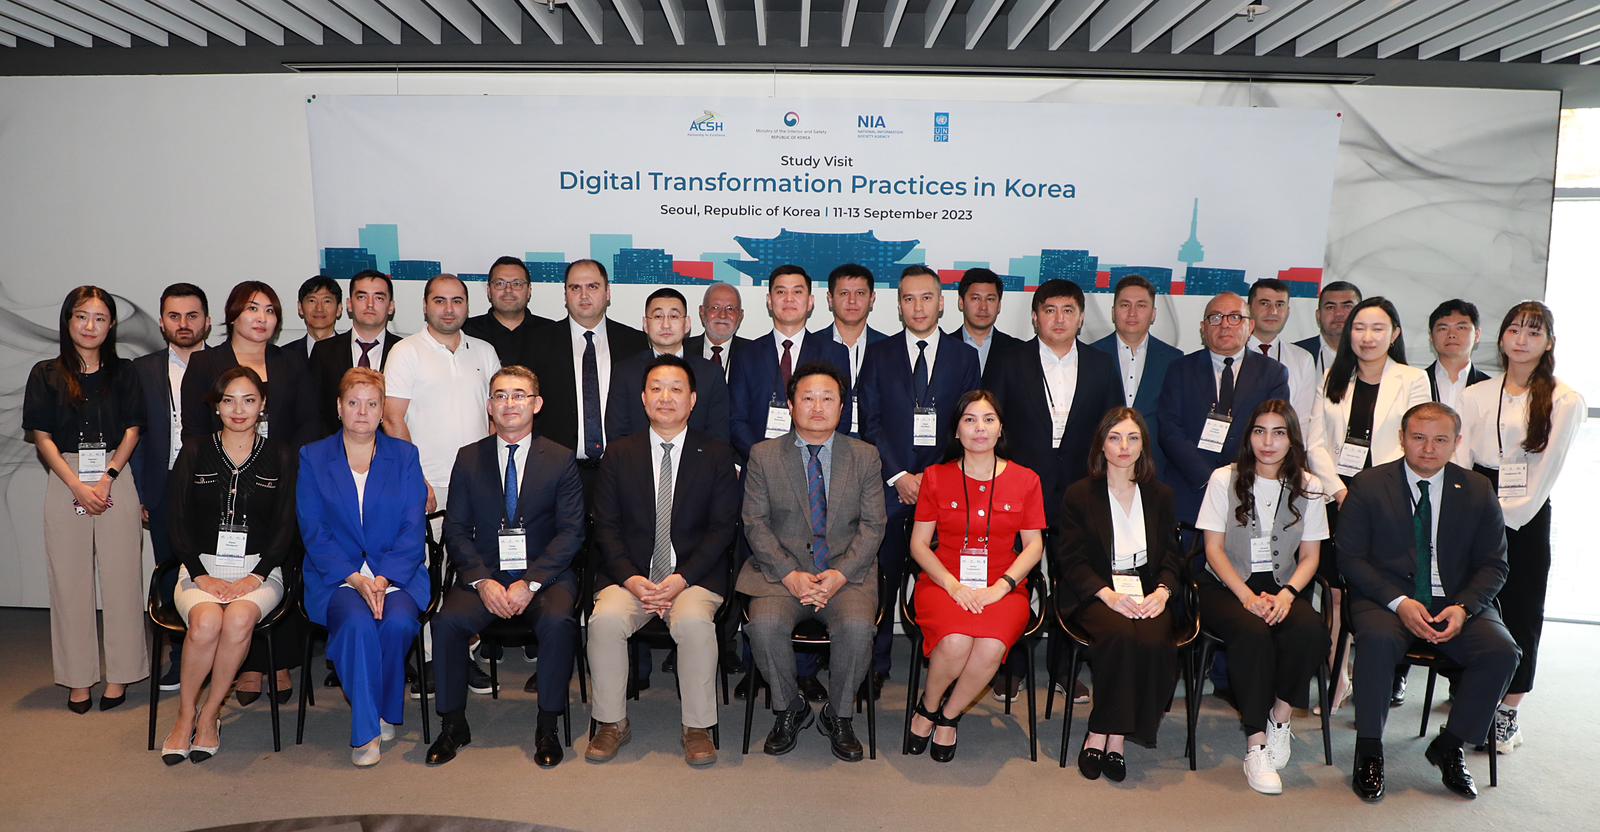 Представители стран Центральной Азии и Кавказа изучают передовые цифровые практики Республики Корея